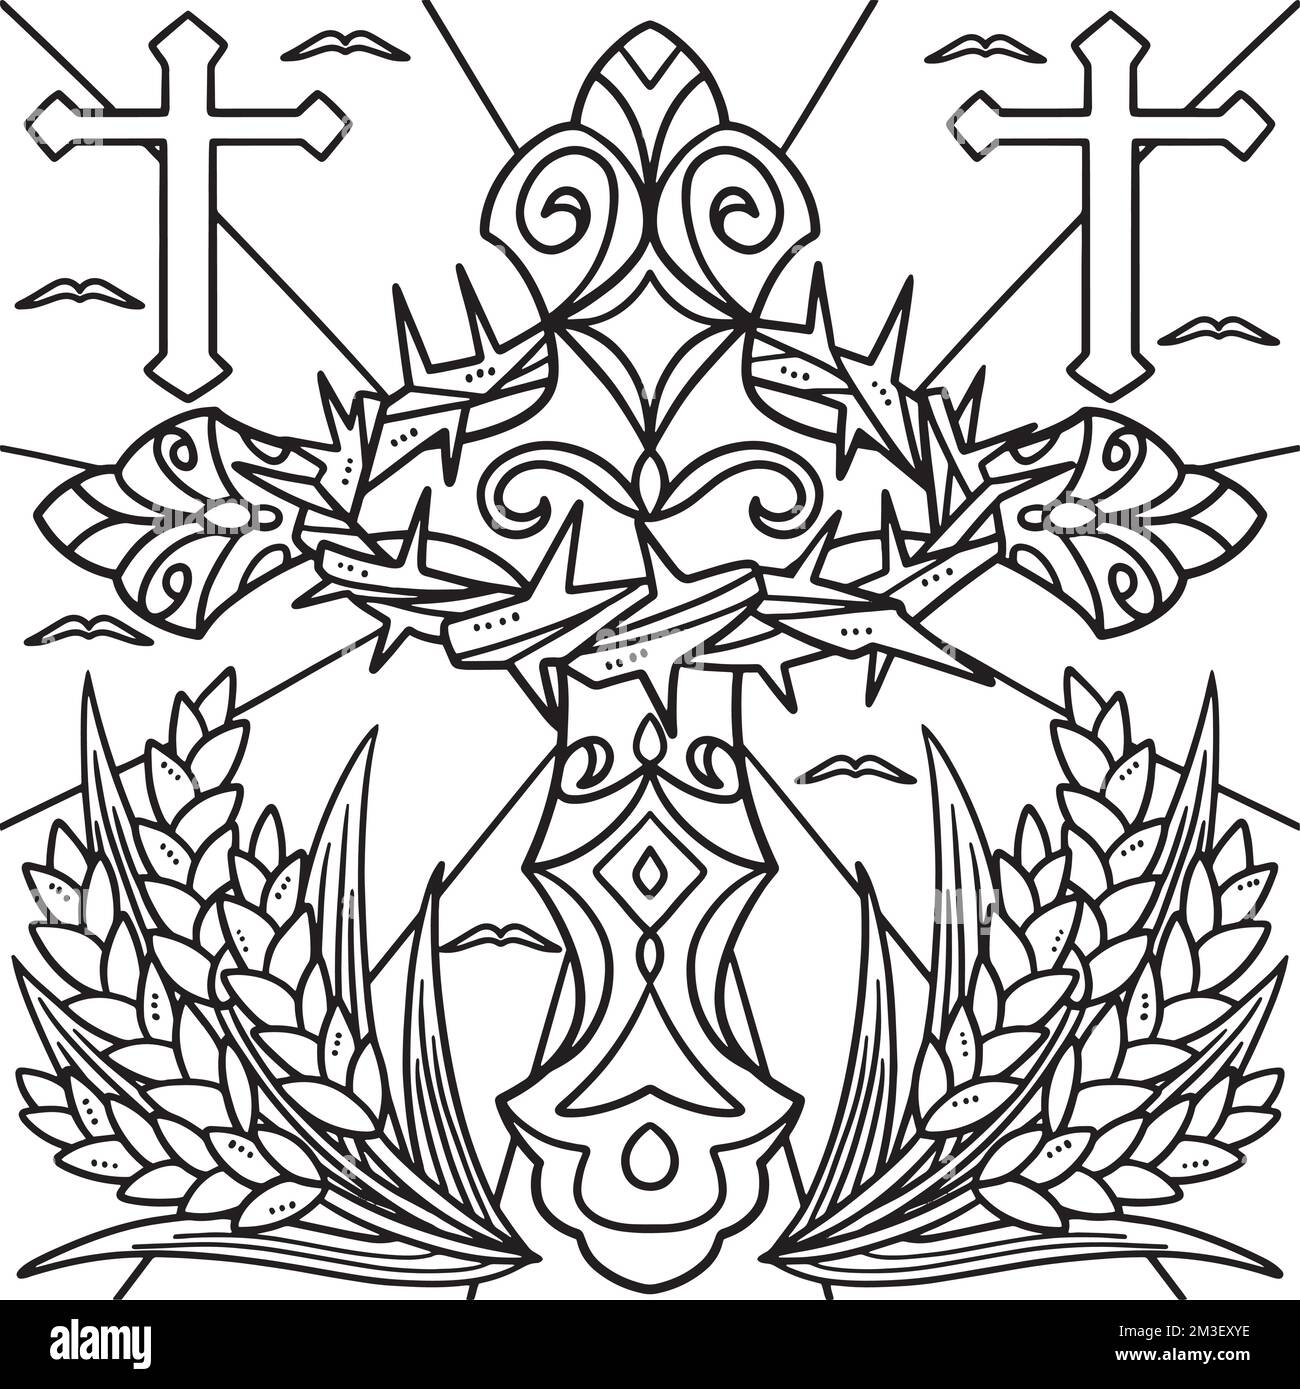 Croix chrétienne avec la couronne de Thorns coloriage page Illustration de Vecteur